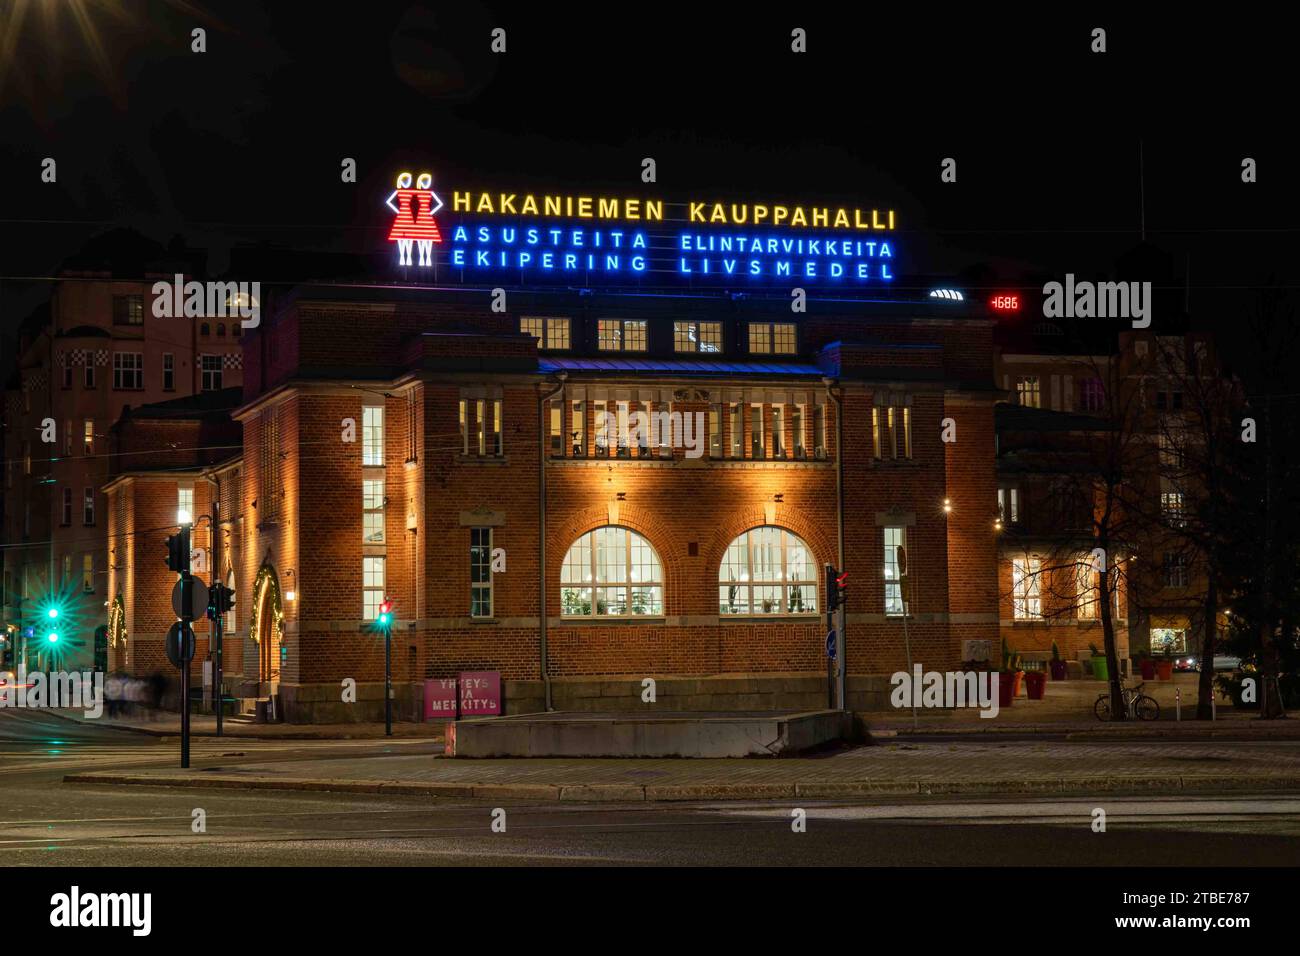 Hakaniemen kauppahalli oder Hakaniemi Market Hall mit Neonlichtern nach Einbruch der Dunkelheit in Helsinki, Finnland Stockfoto